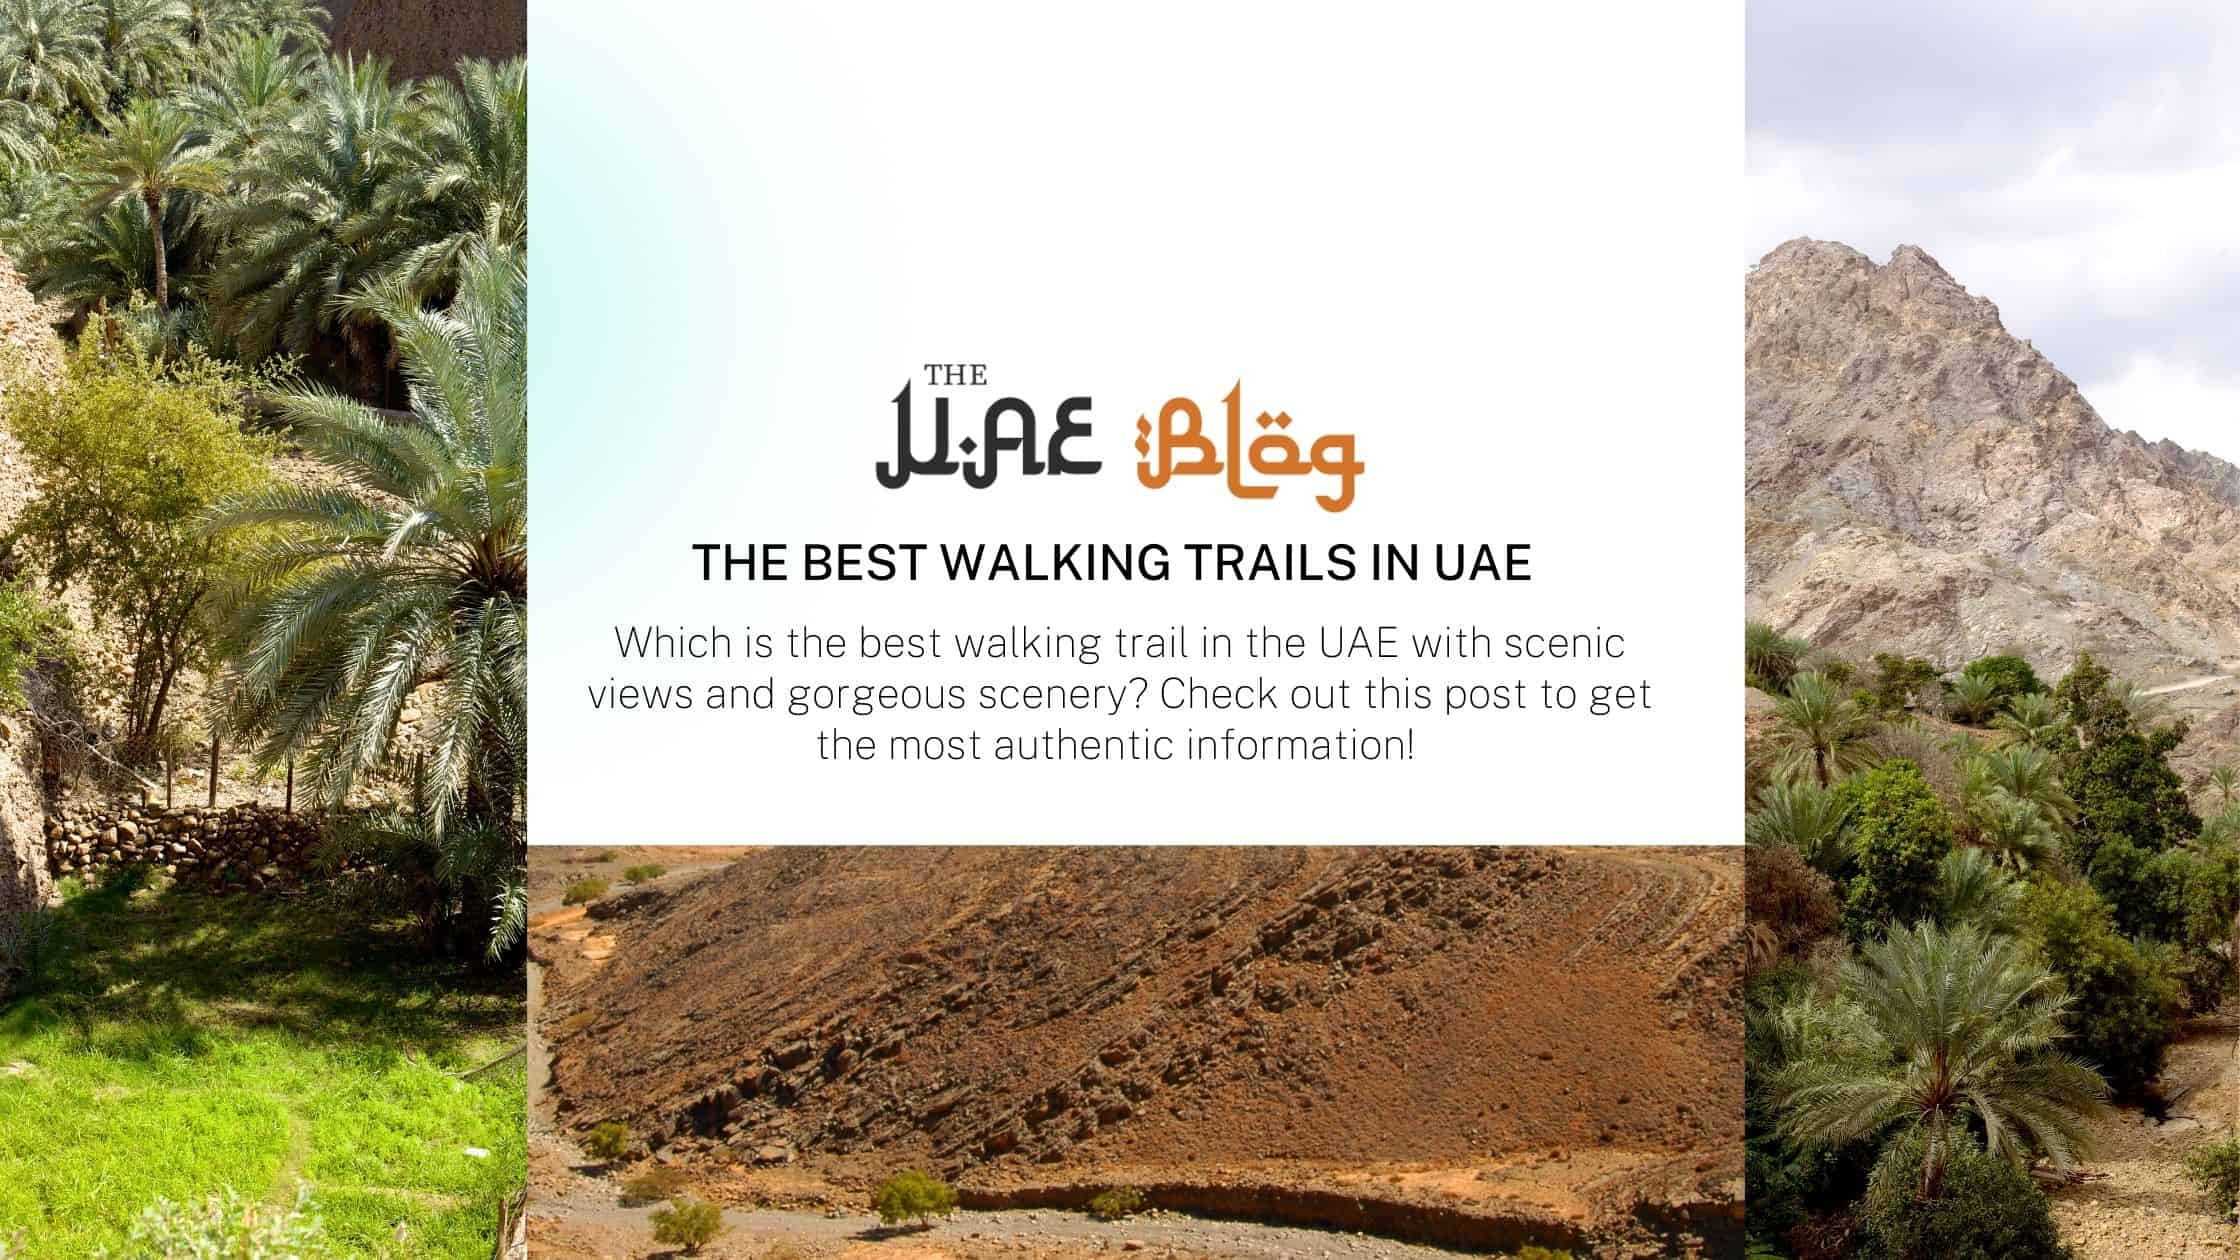 The Best Walking Trails in UAE